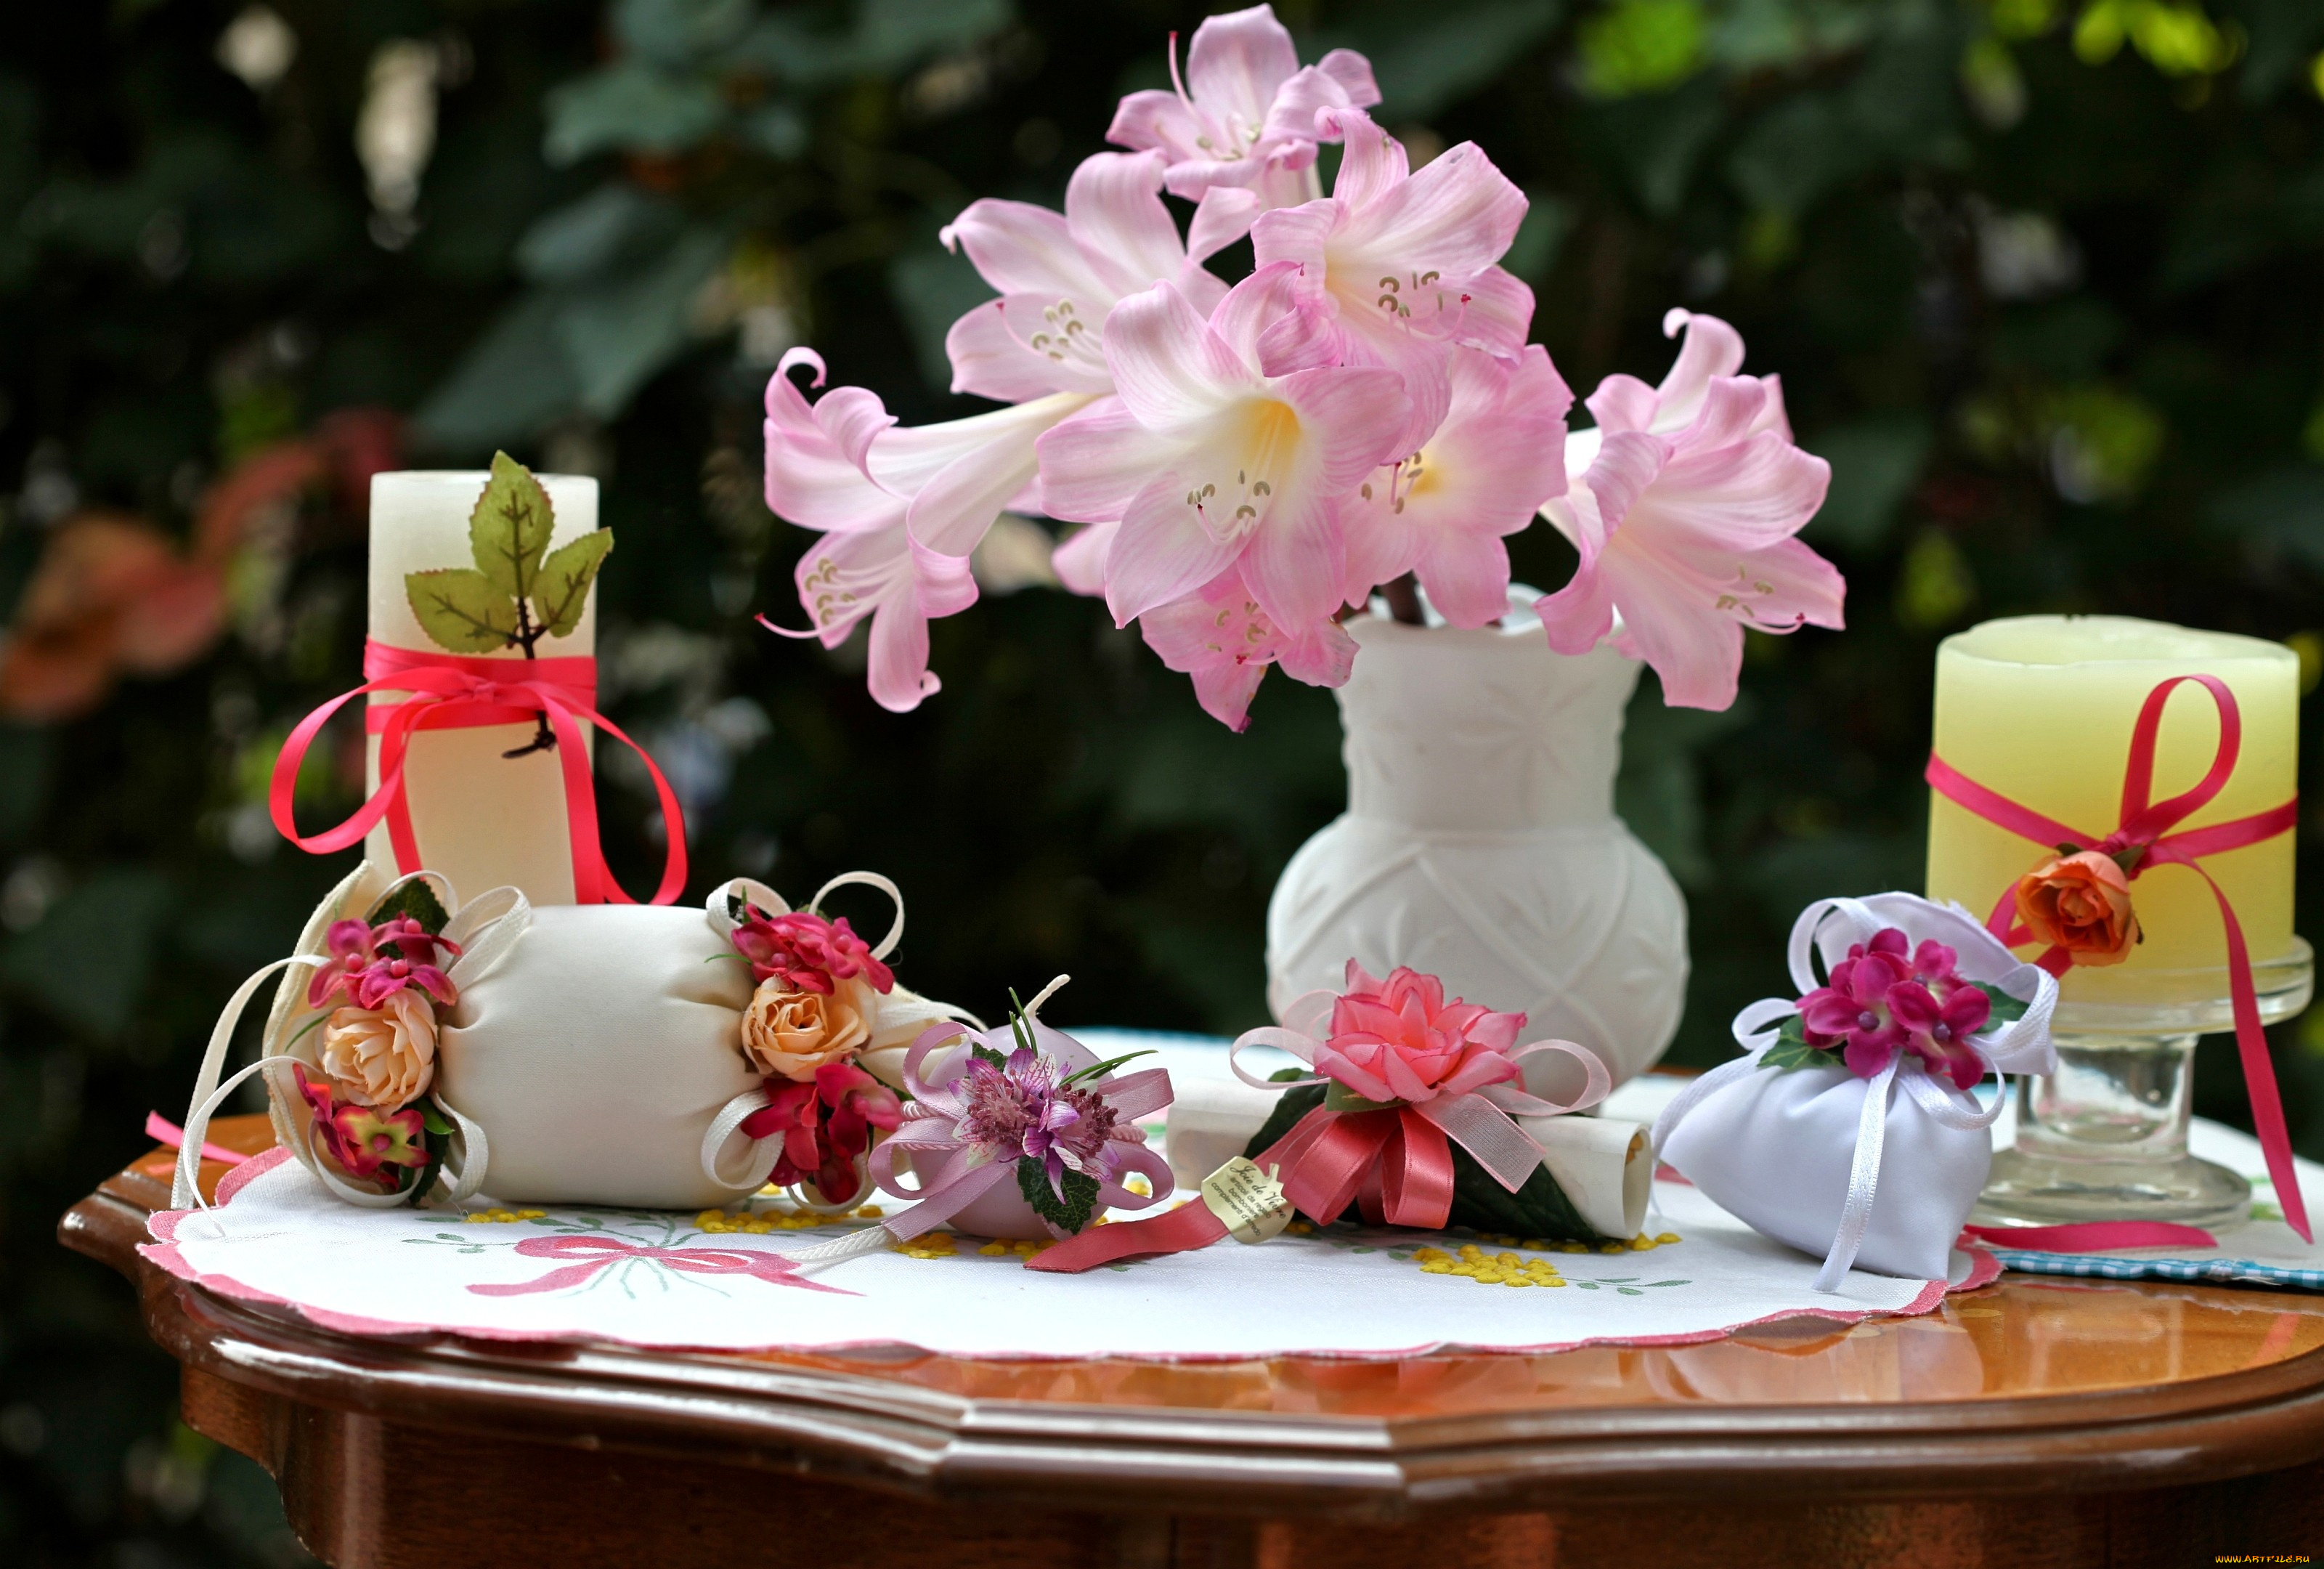 Картинка с цветами на столе. Цветы в подарок. Подарок с цветами. Цветы и свечи. Цветы на столе.